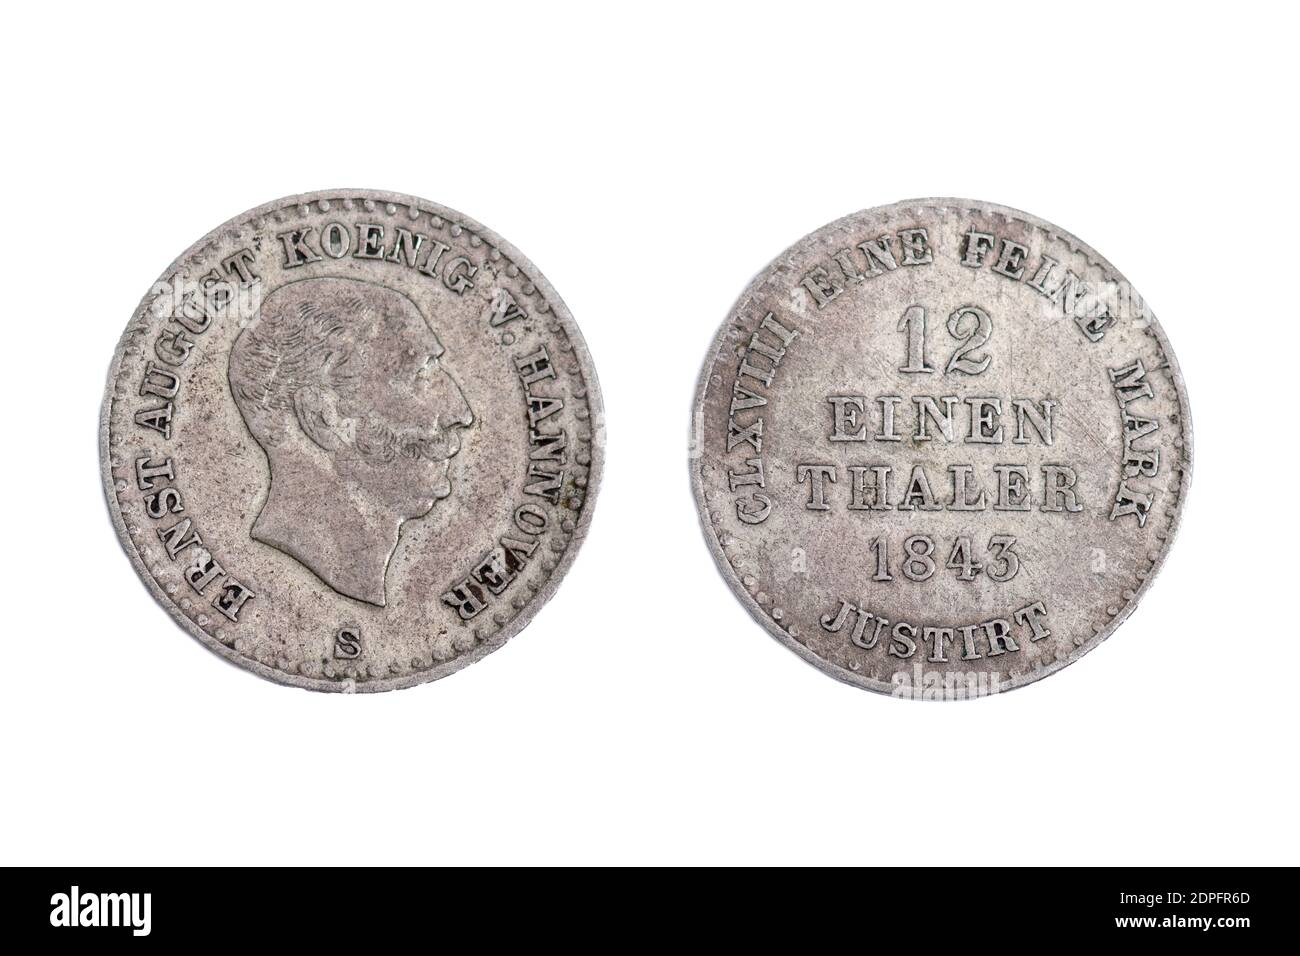 Alte alte alte Jahrgangsmünzmünzen Geld Ernst Augustus König von Hannover Hannover Deutschland Deutsch 1843 Kupfer Silber gemischt 12 einen Thaler Mark Stockfoto